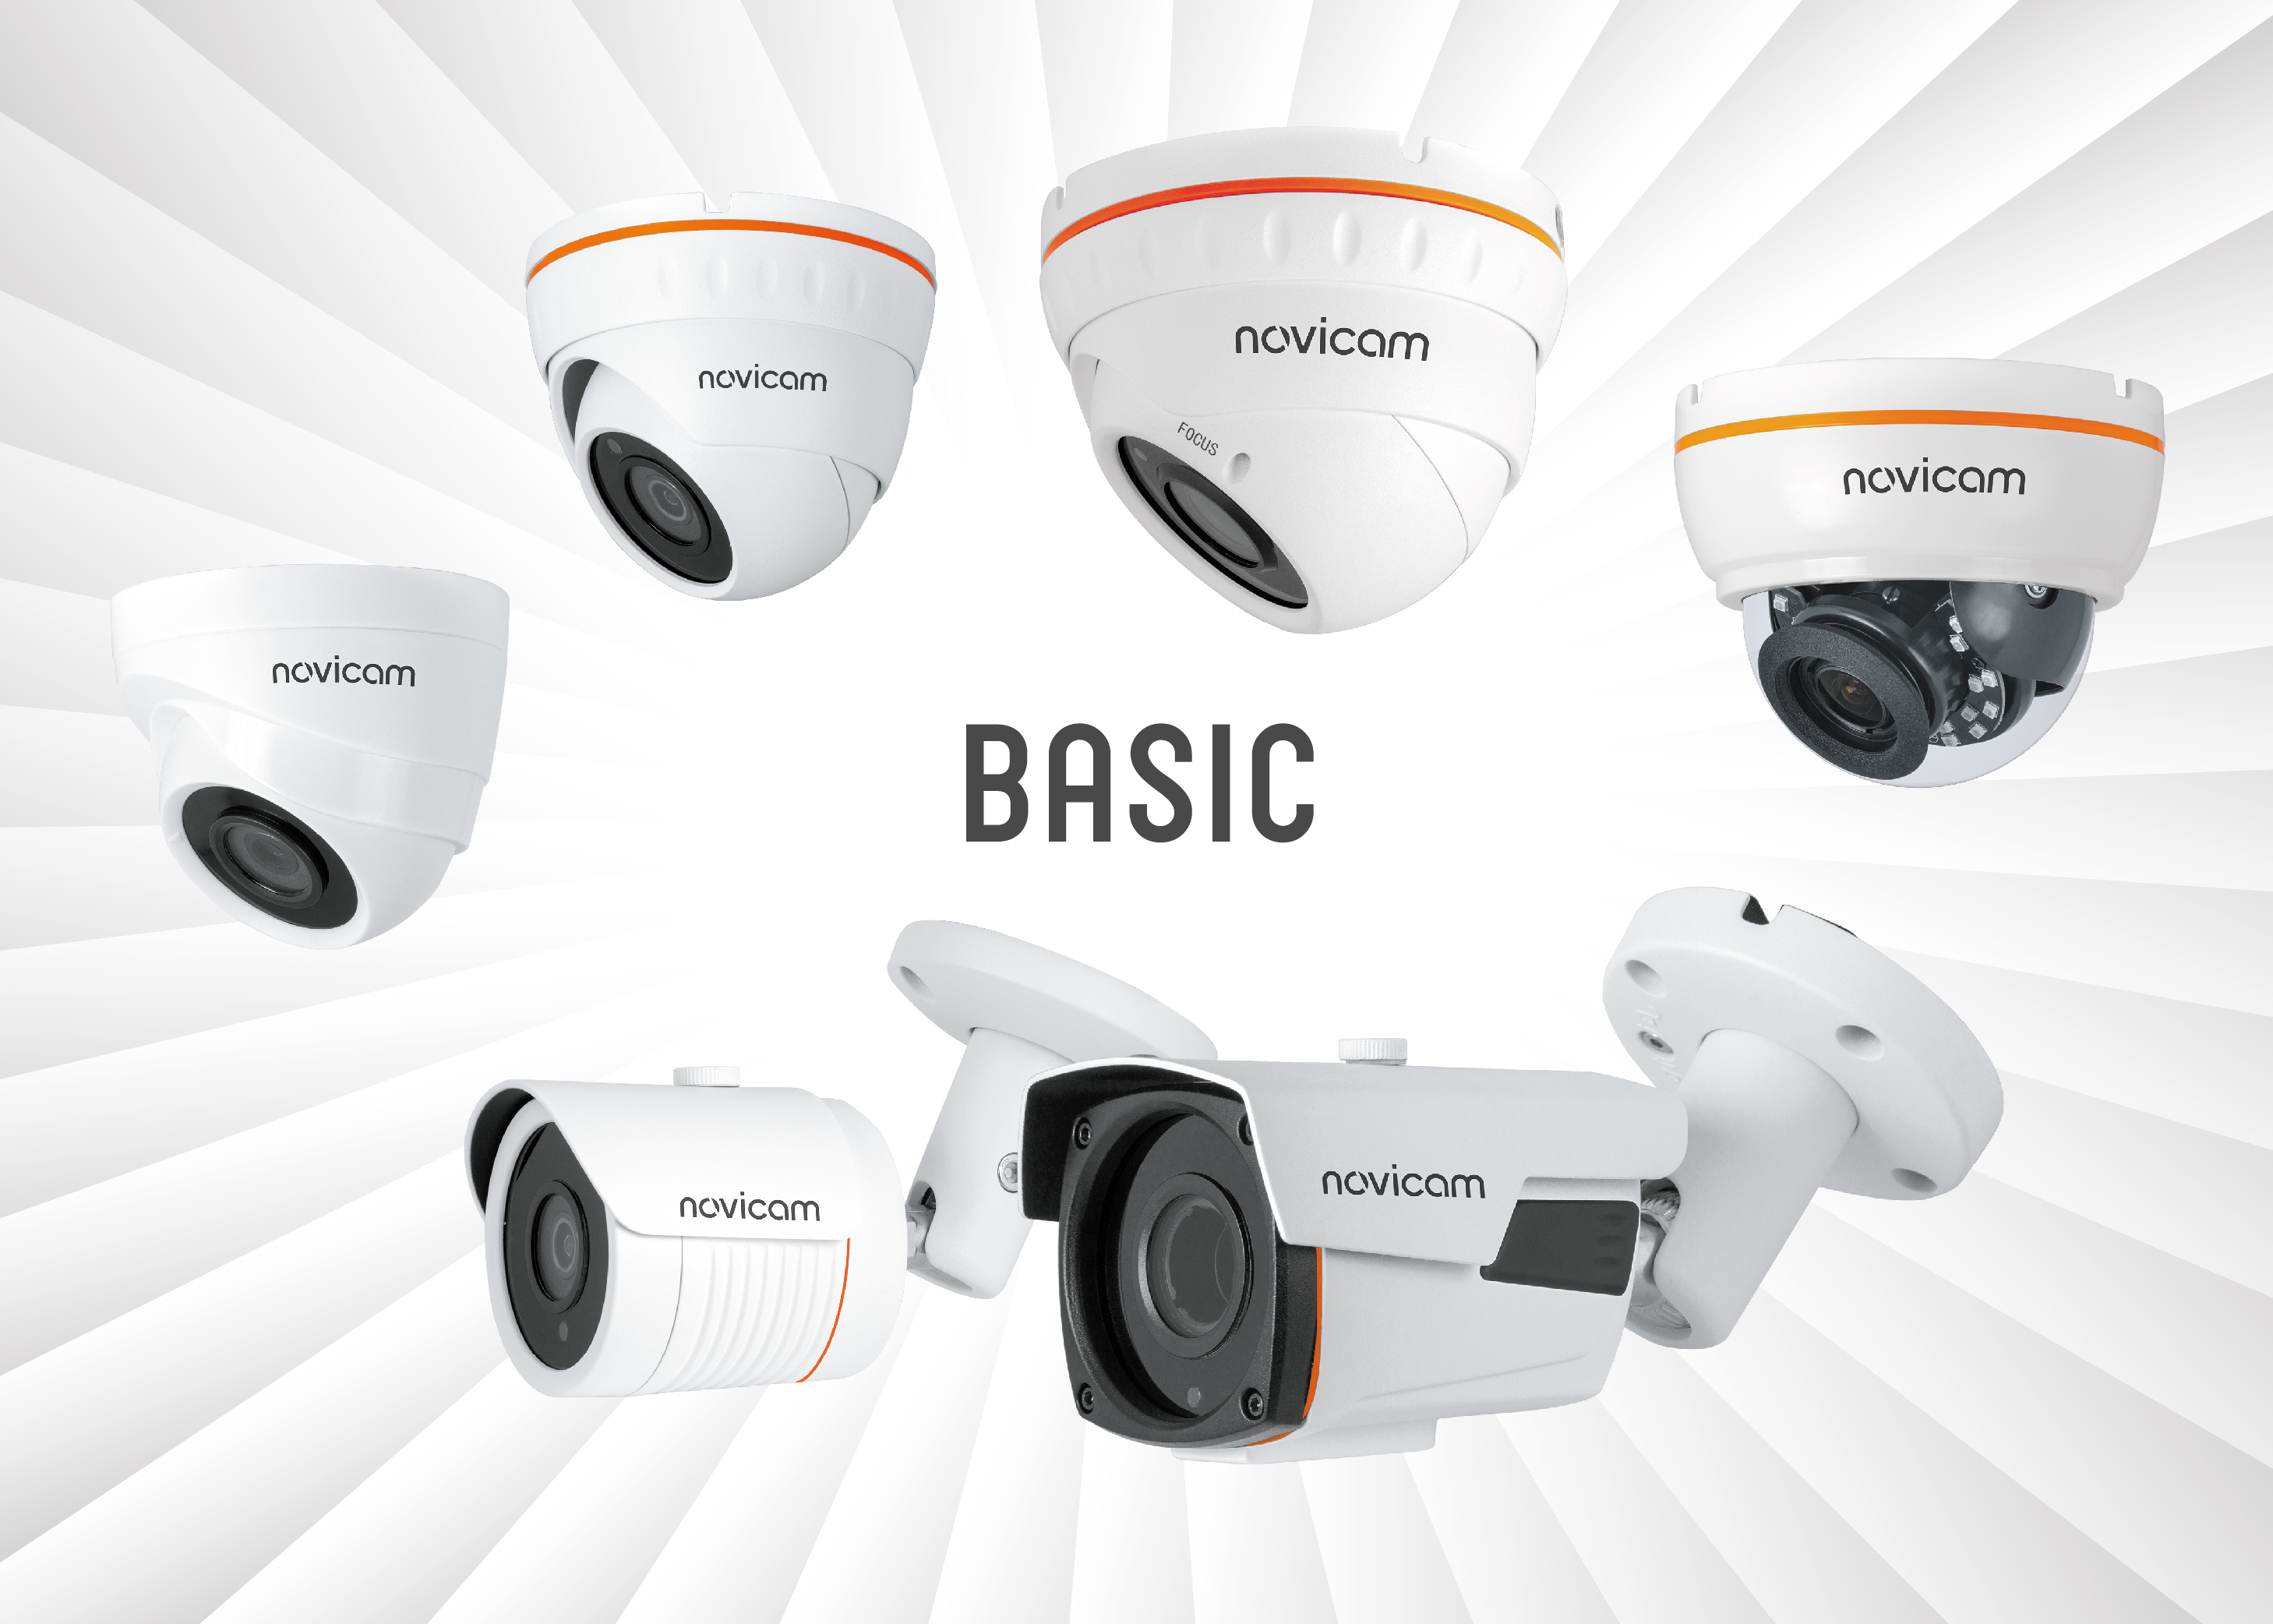 Ассортимент Компании Novicam пополнился обновленными бюджетными IP видеокамерами - линейкой BASIC